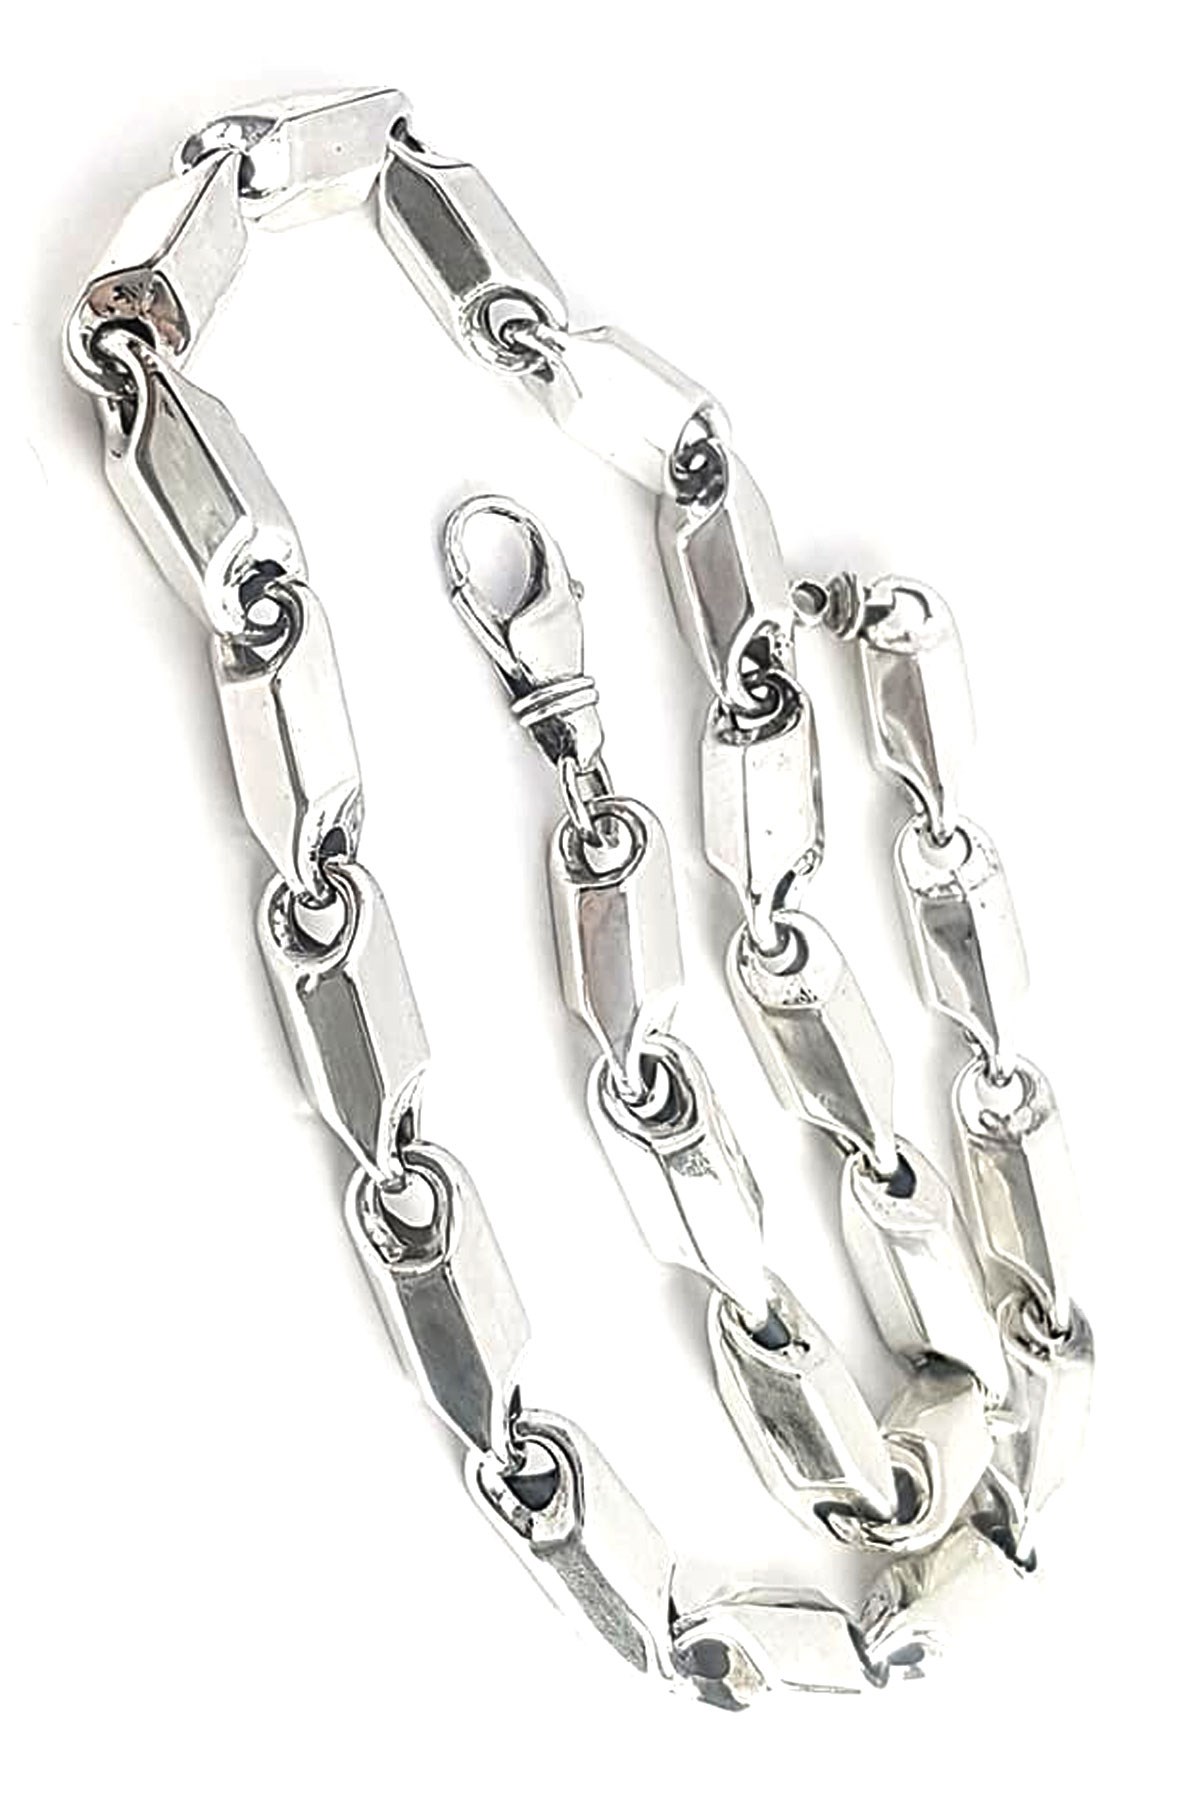 İtalyan tasarımı gümüş erkek zincir kolye - OSESHOP